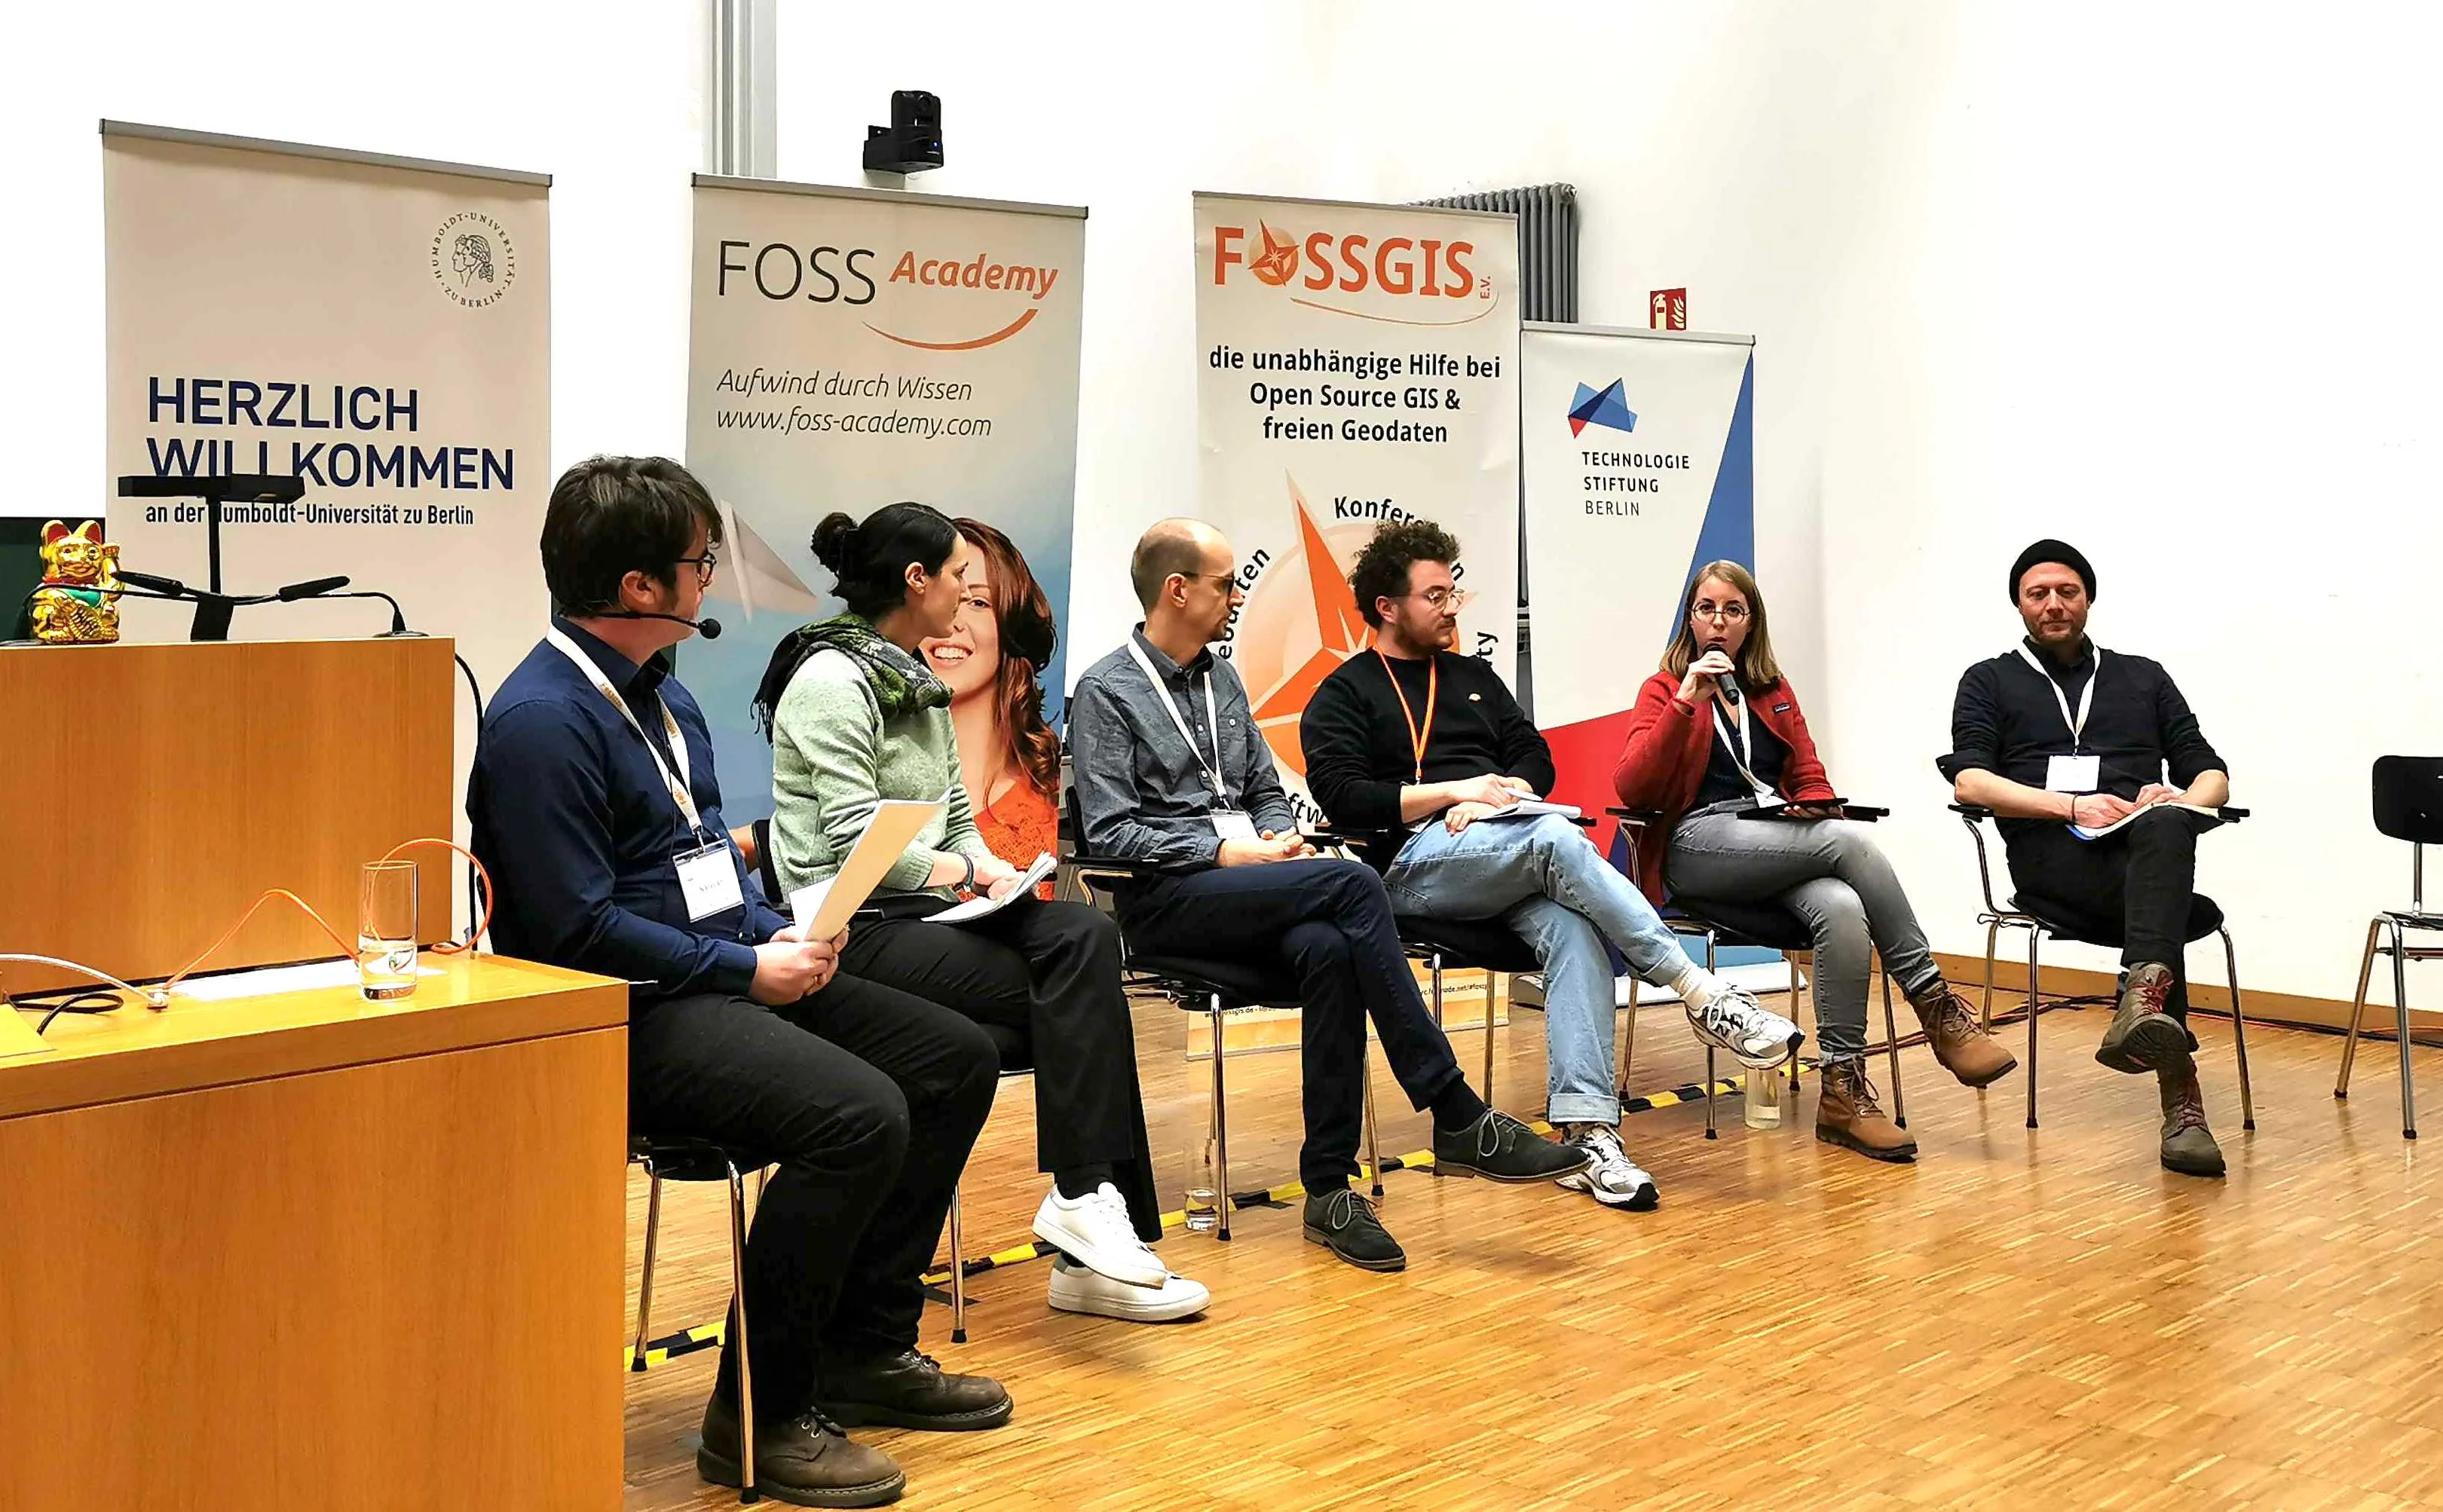 Victoria Boeck neben anderen Expert:innen auf dem Panel zu öffentlichen Ausschreibungen mit FOSS